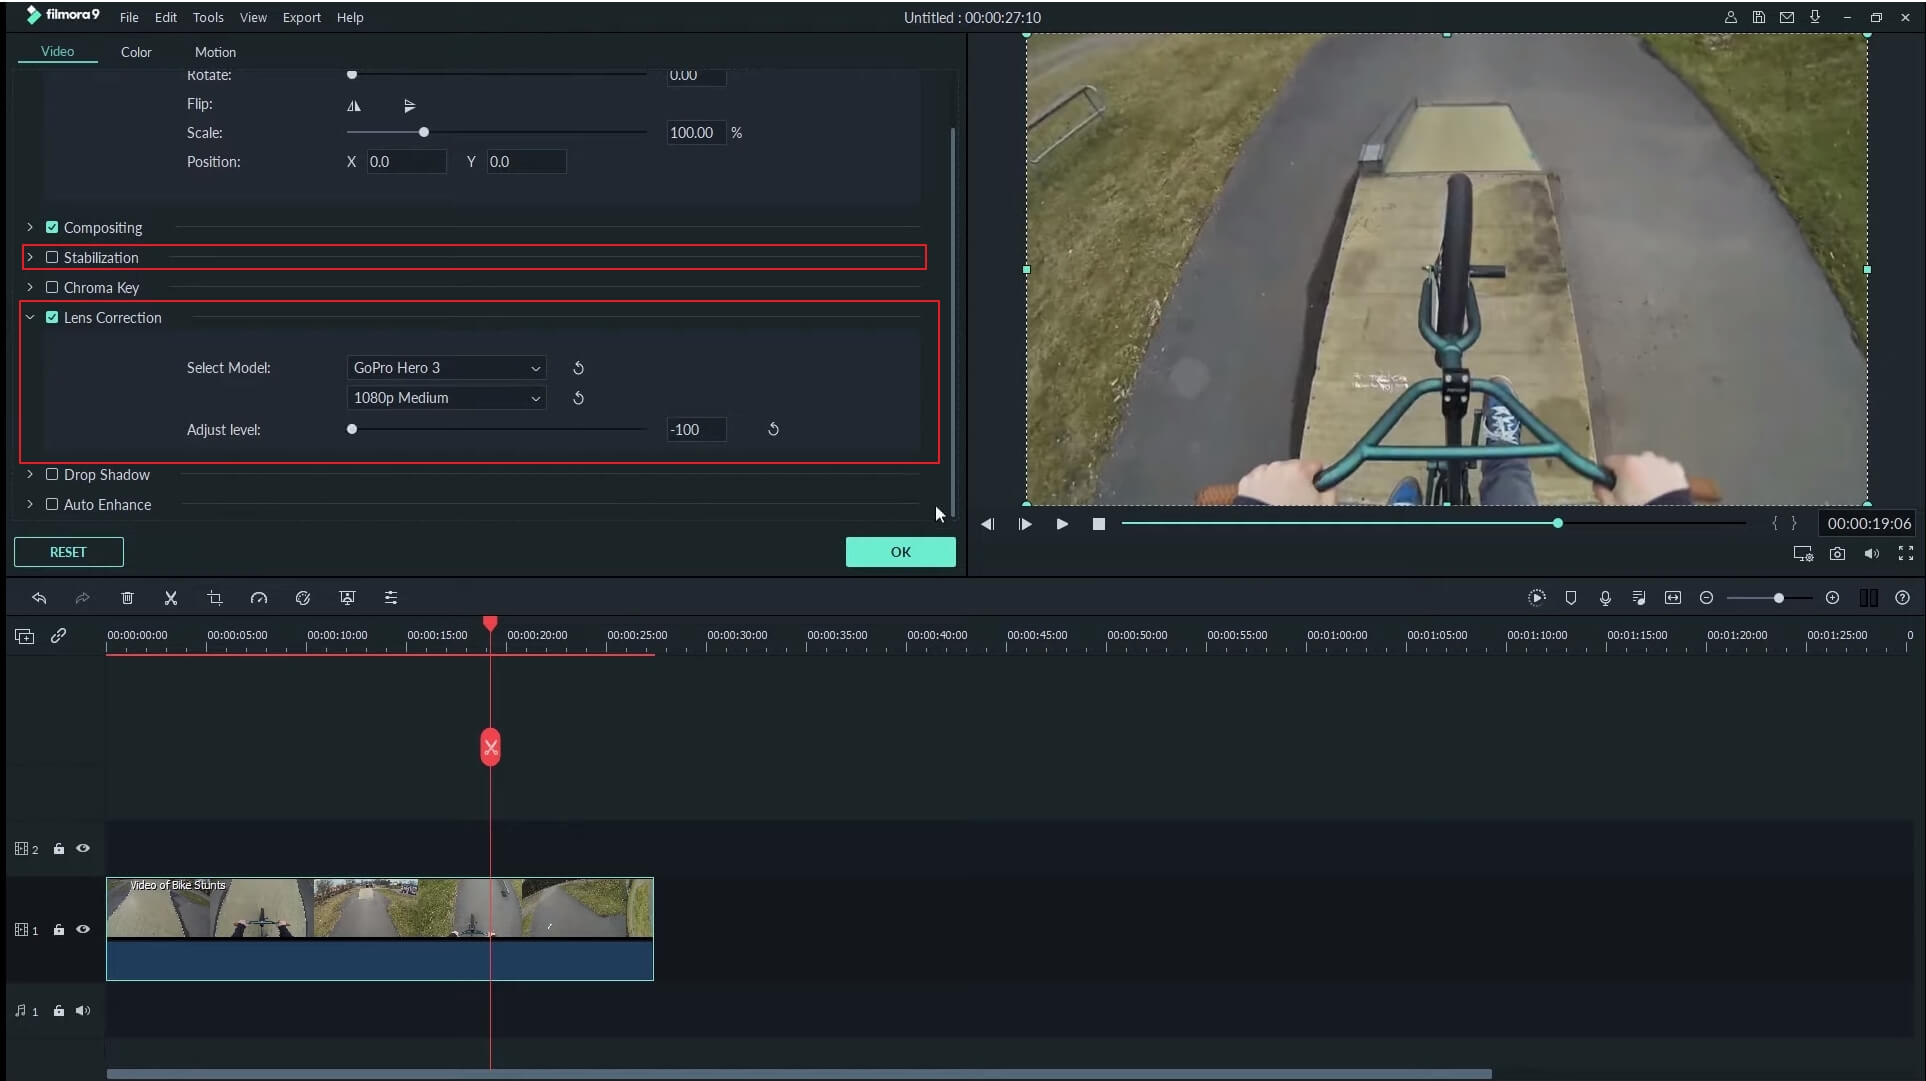 Action Cam Editing Tools in Filmora